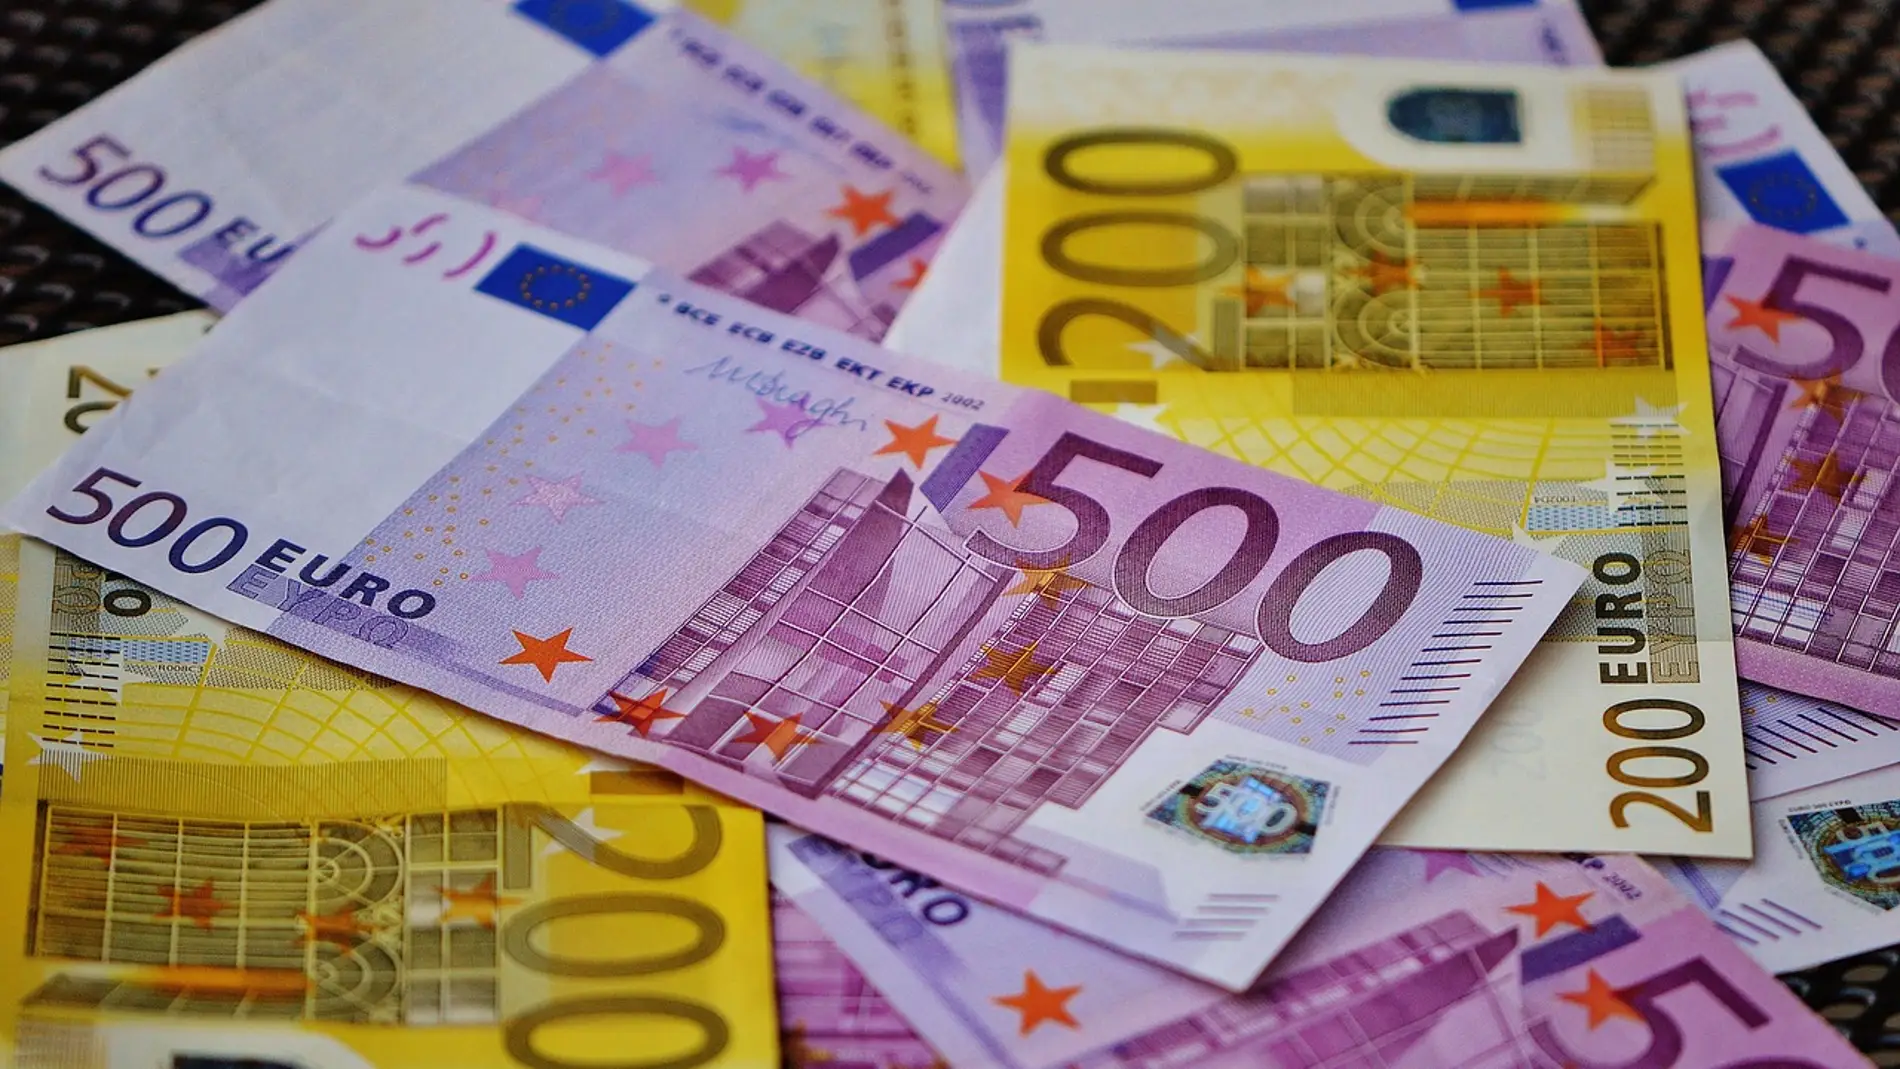 Billetes euros